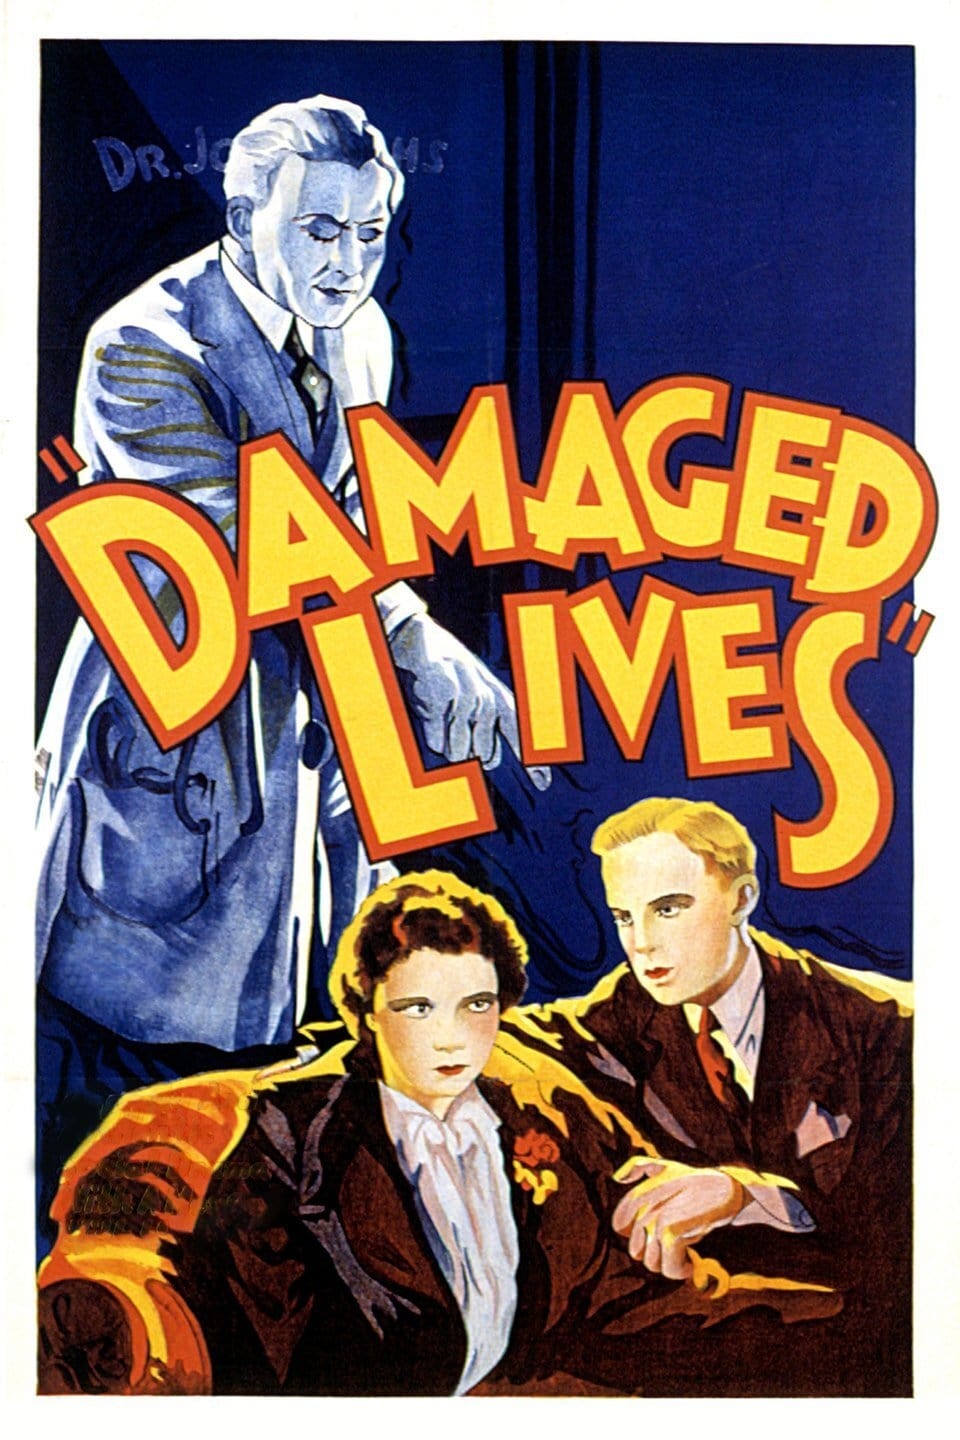 Damaged Lives (1933)